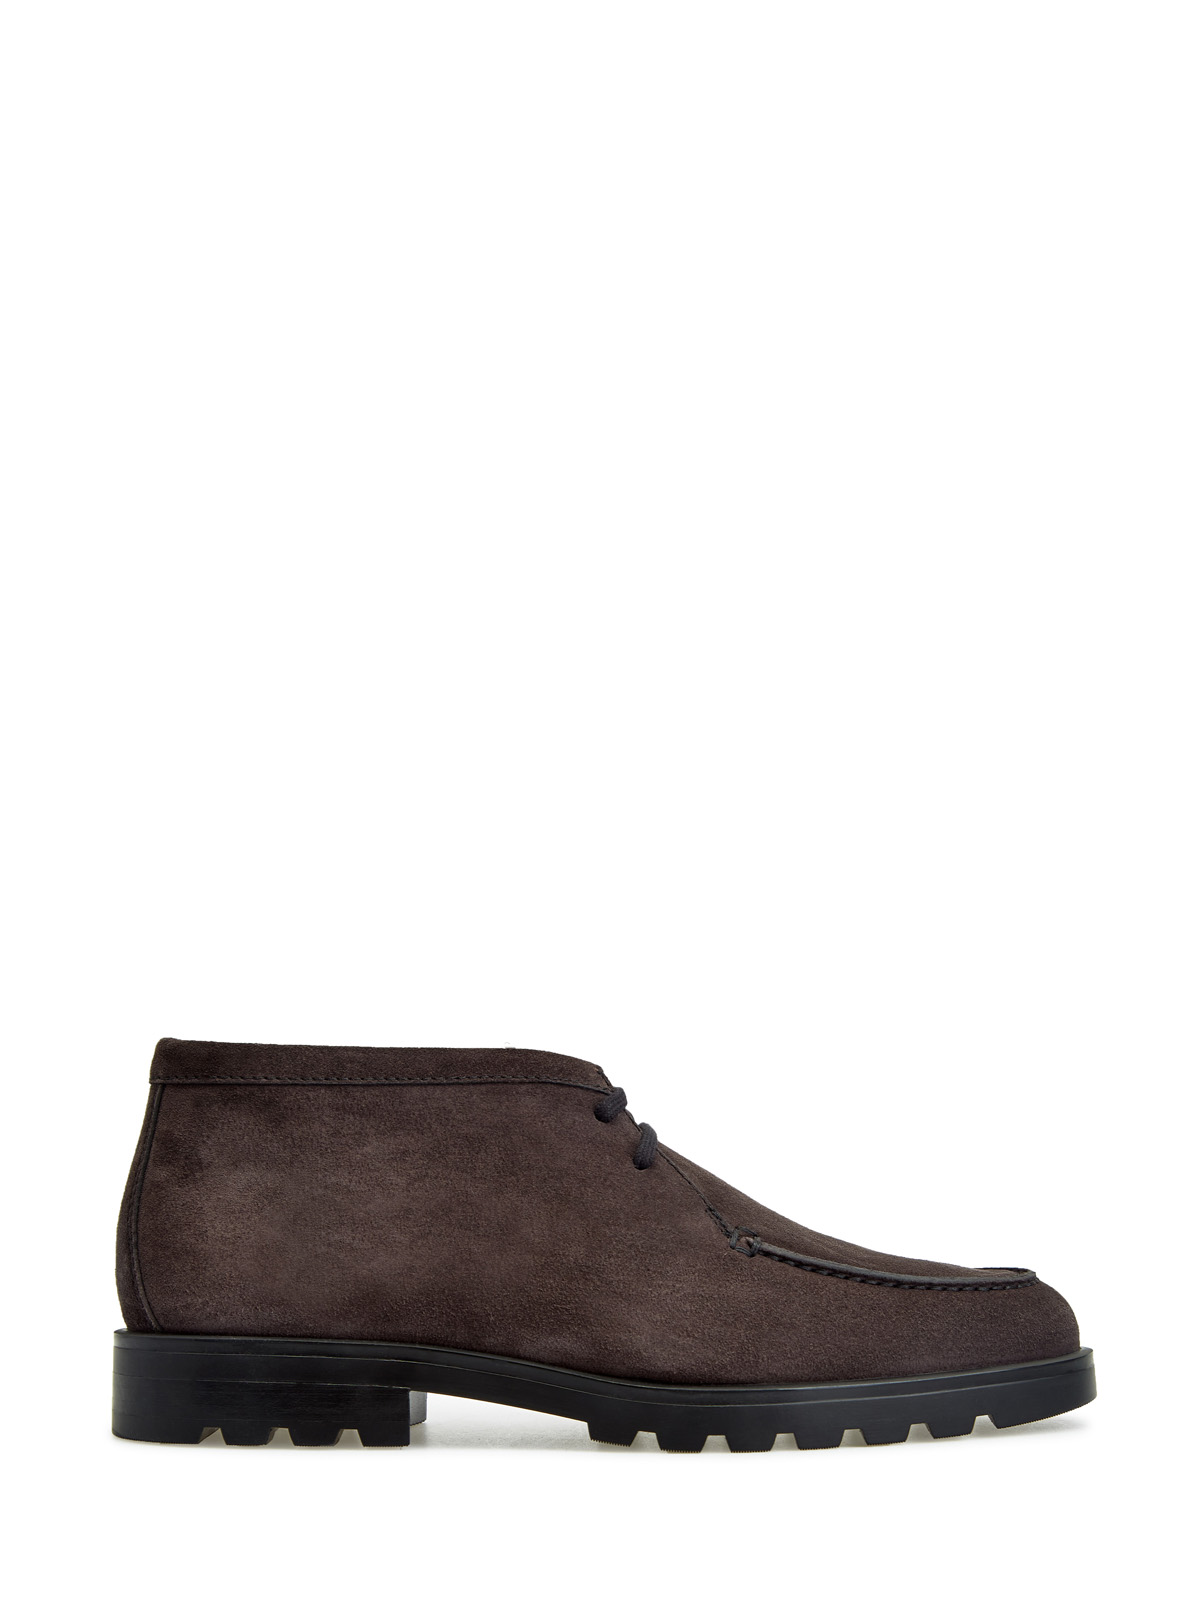 Замшевые ботинки-дезерты ручной работы на шнуровке SANTONI, цвет коричневый, размер 41;42;42.5;43.5;44